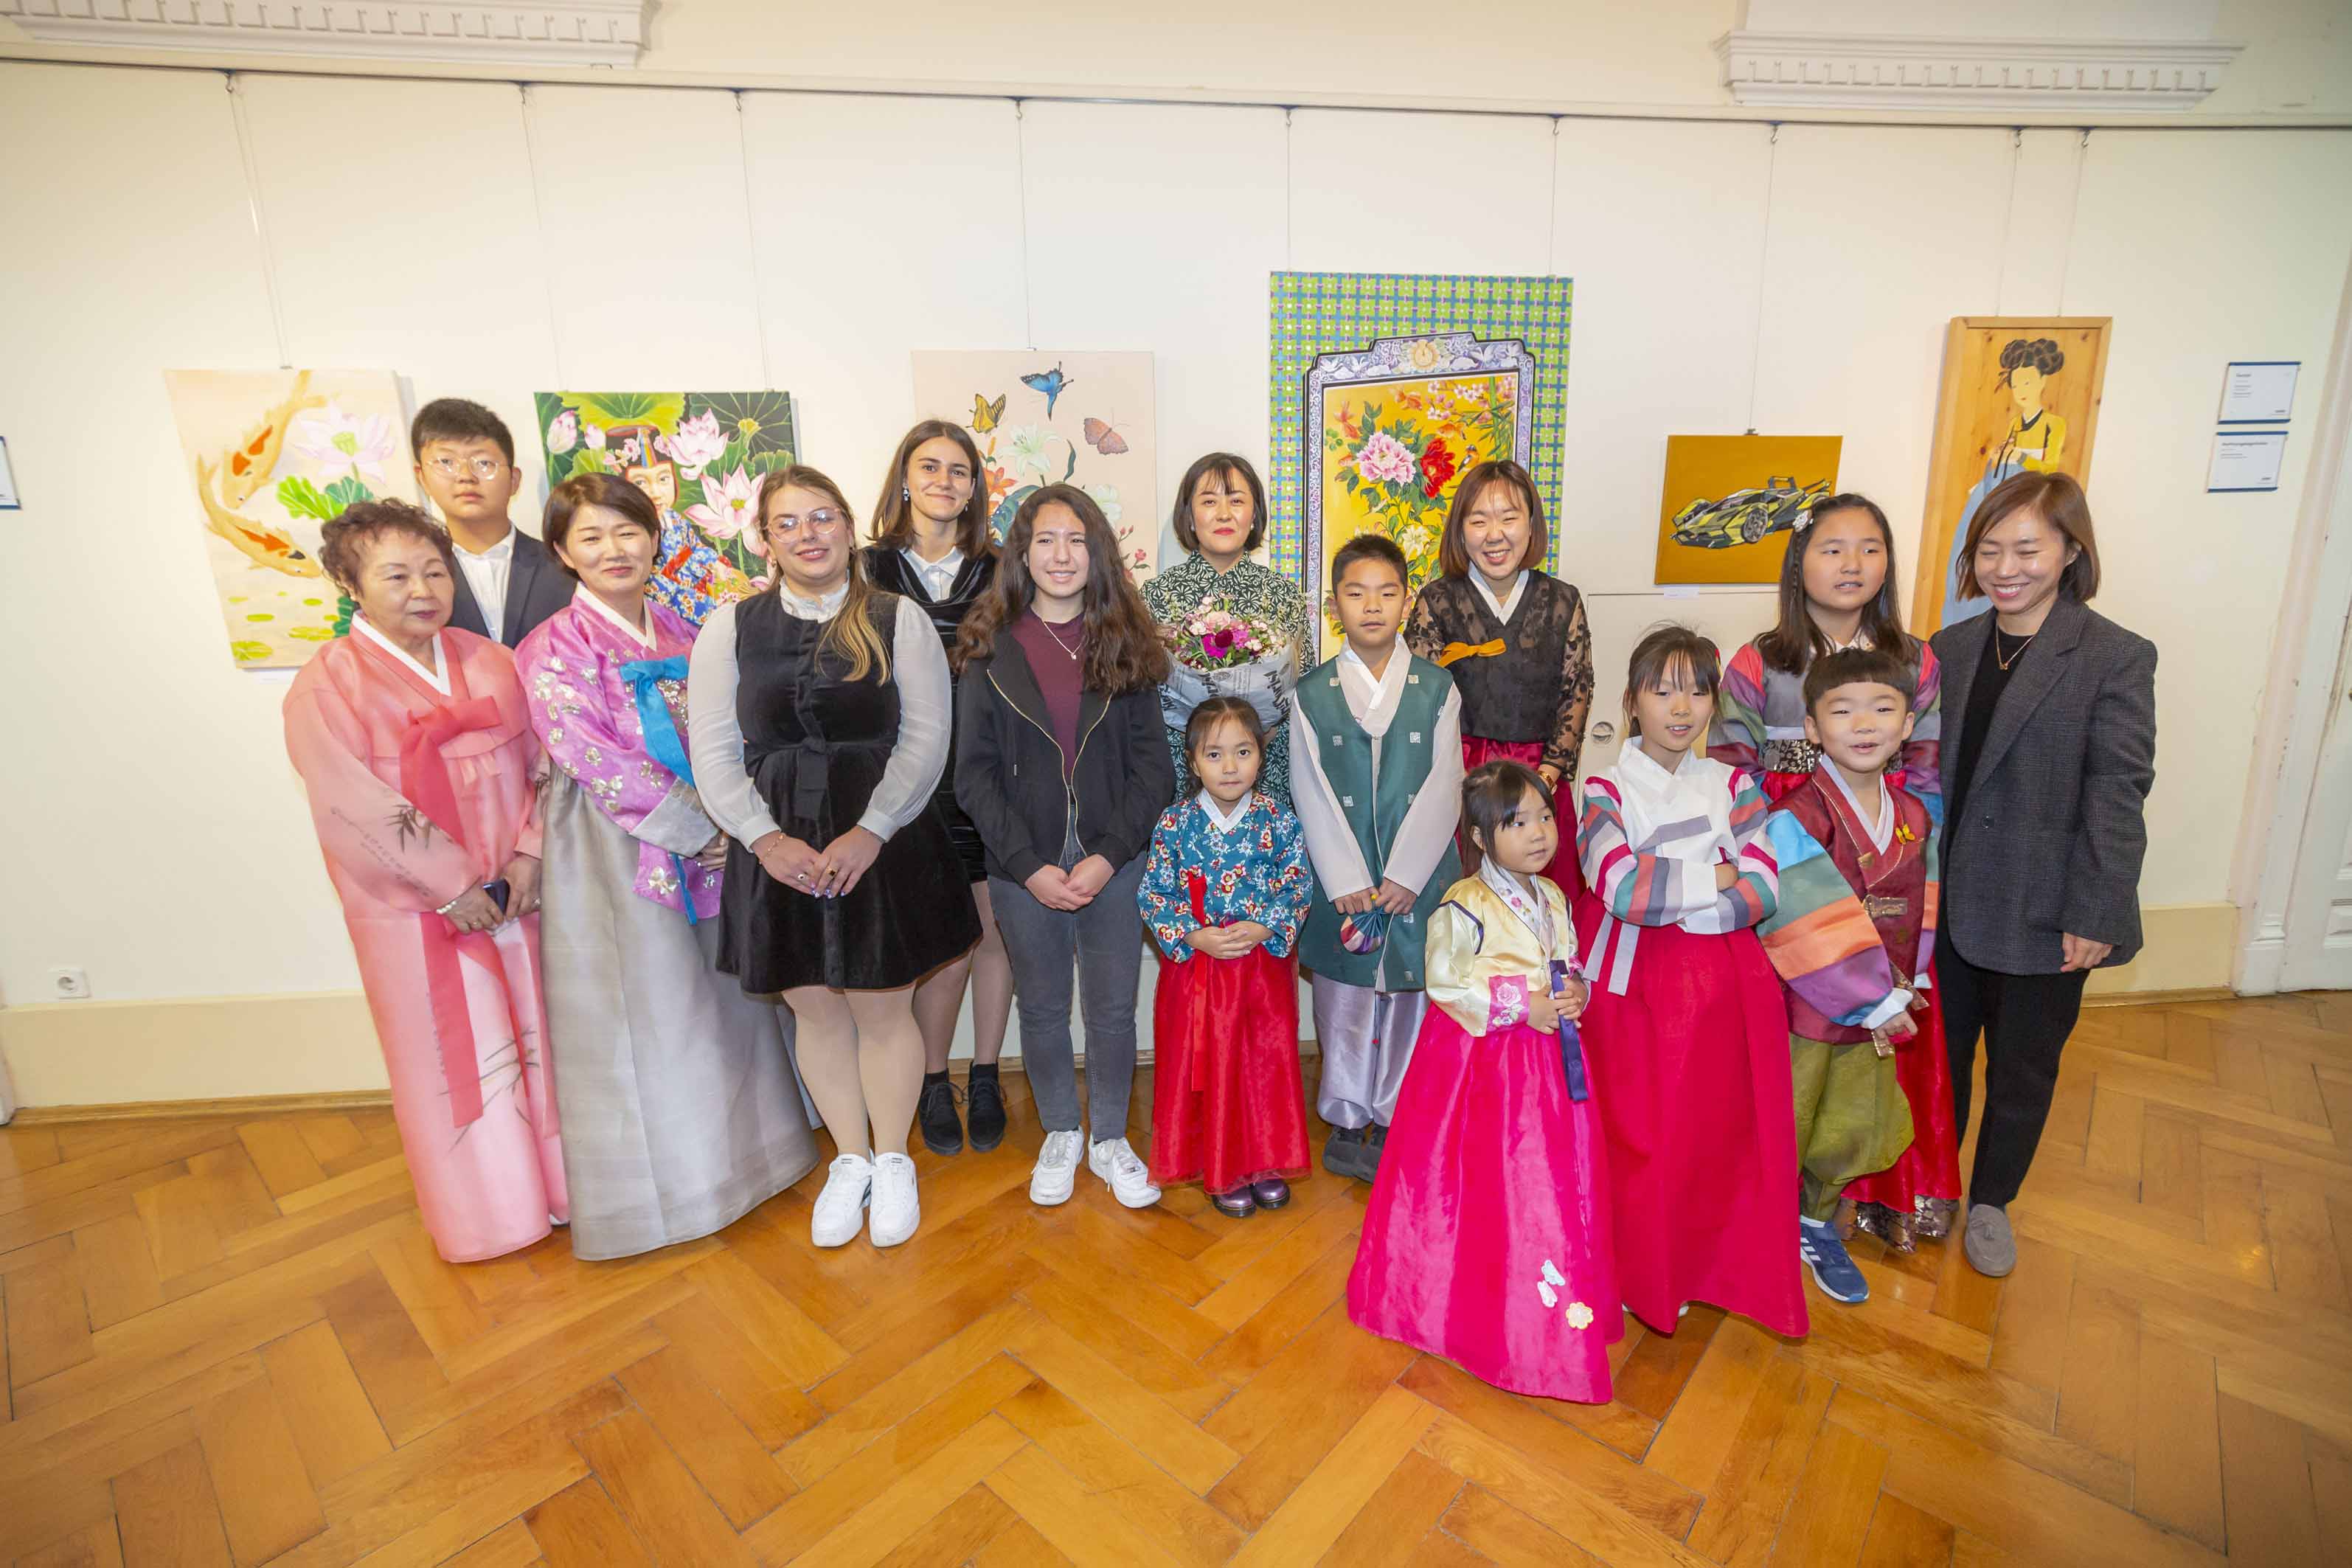 Einblicke in ihre Kunst geben die Schüler:innen der Korean School Graz